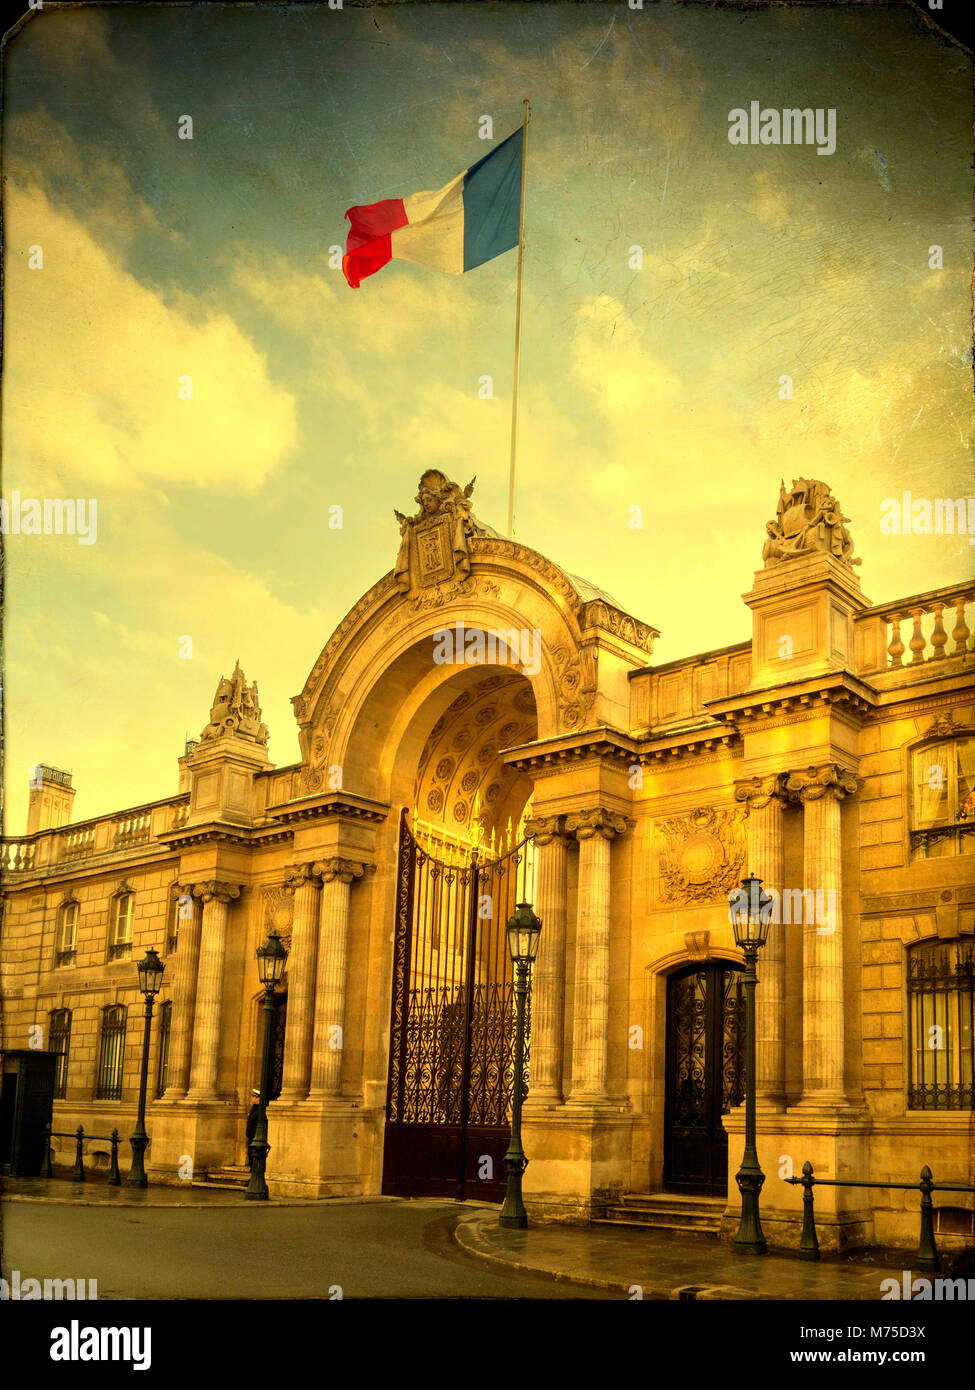 Eingang zum Elysee-Palast, Ort des französischen Präsidenten, rue du faubourg Saint Honore, Paris Frankreich Stockfoto